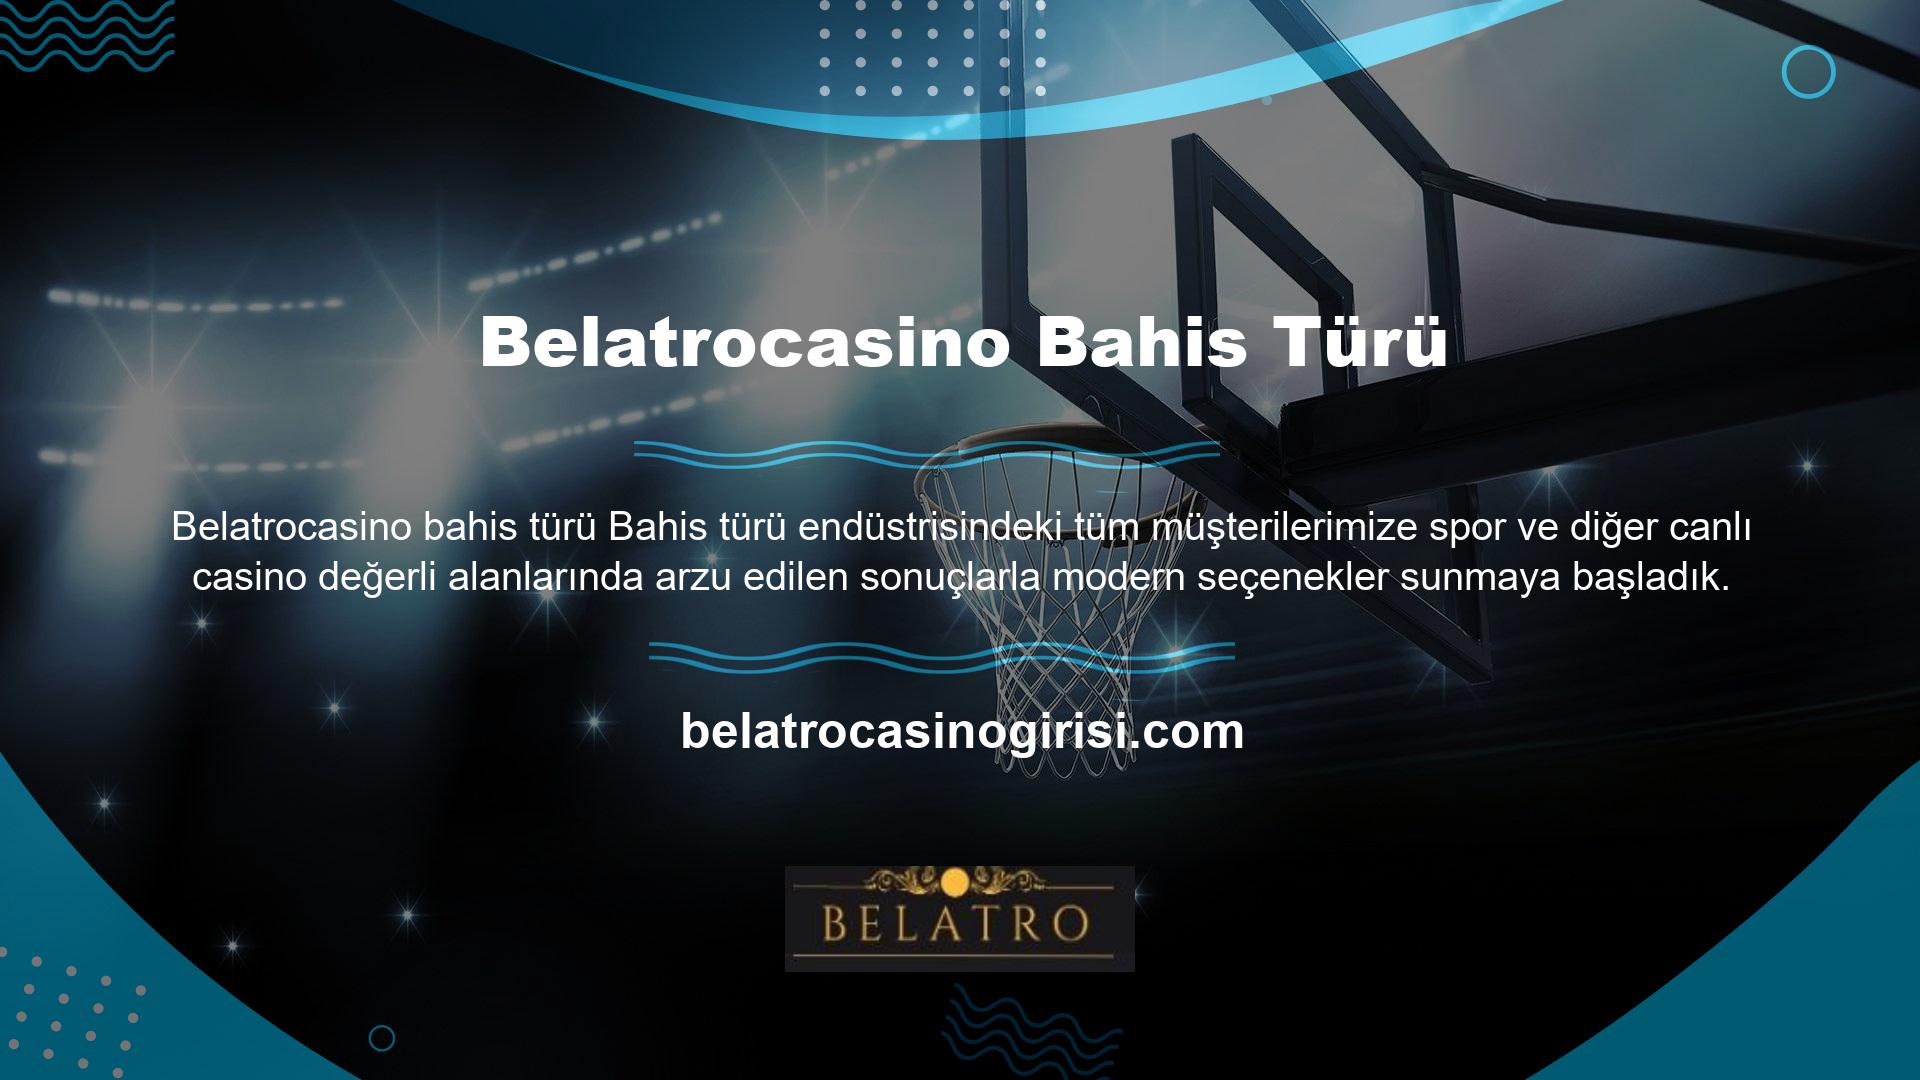 İçinde bulunduğumuz çağda Belatrocasino Spor Bahisleri sayesinde canlı casino oyunlarına ve güncellenmiş yapılandırma seçeneklerine artık herkes erişebilir